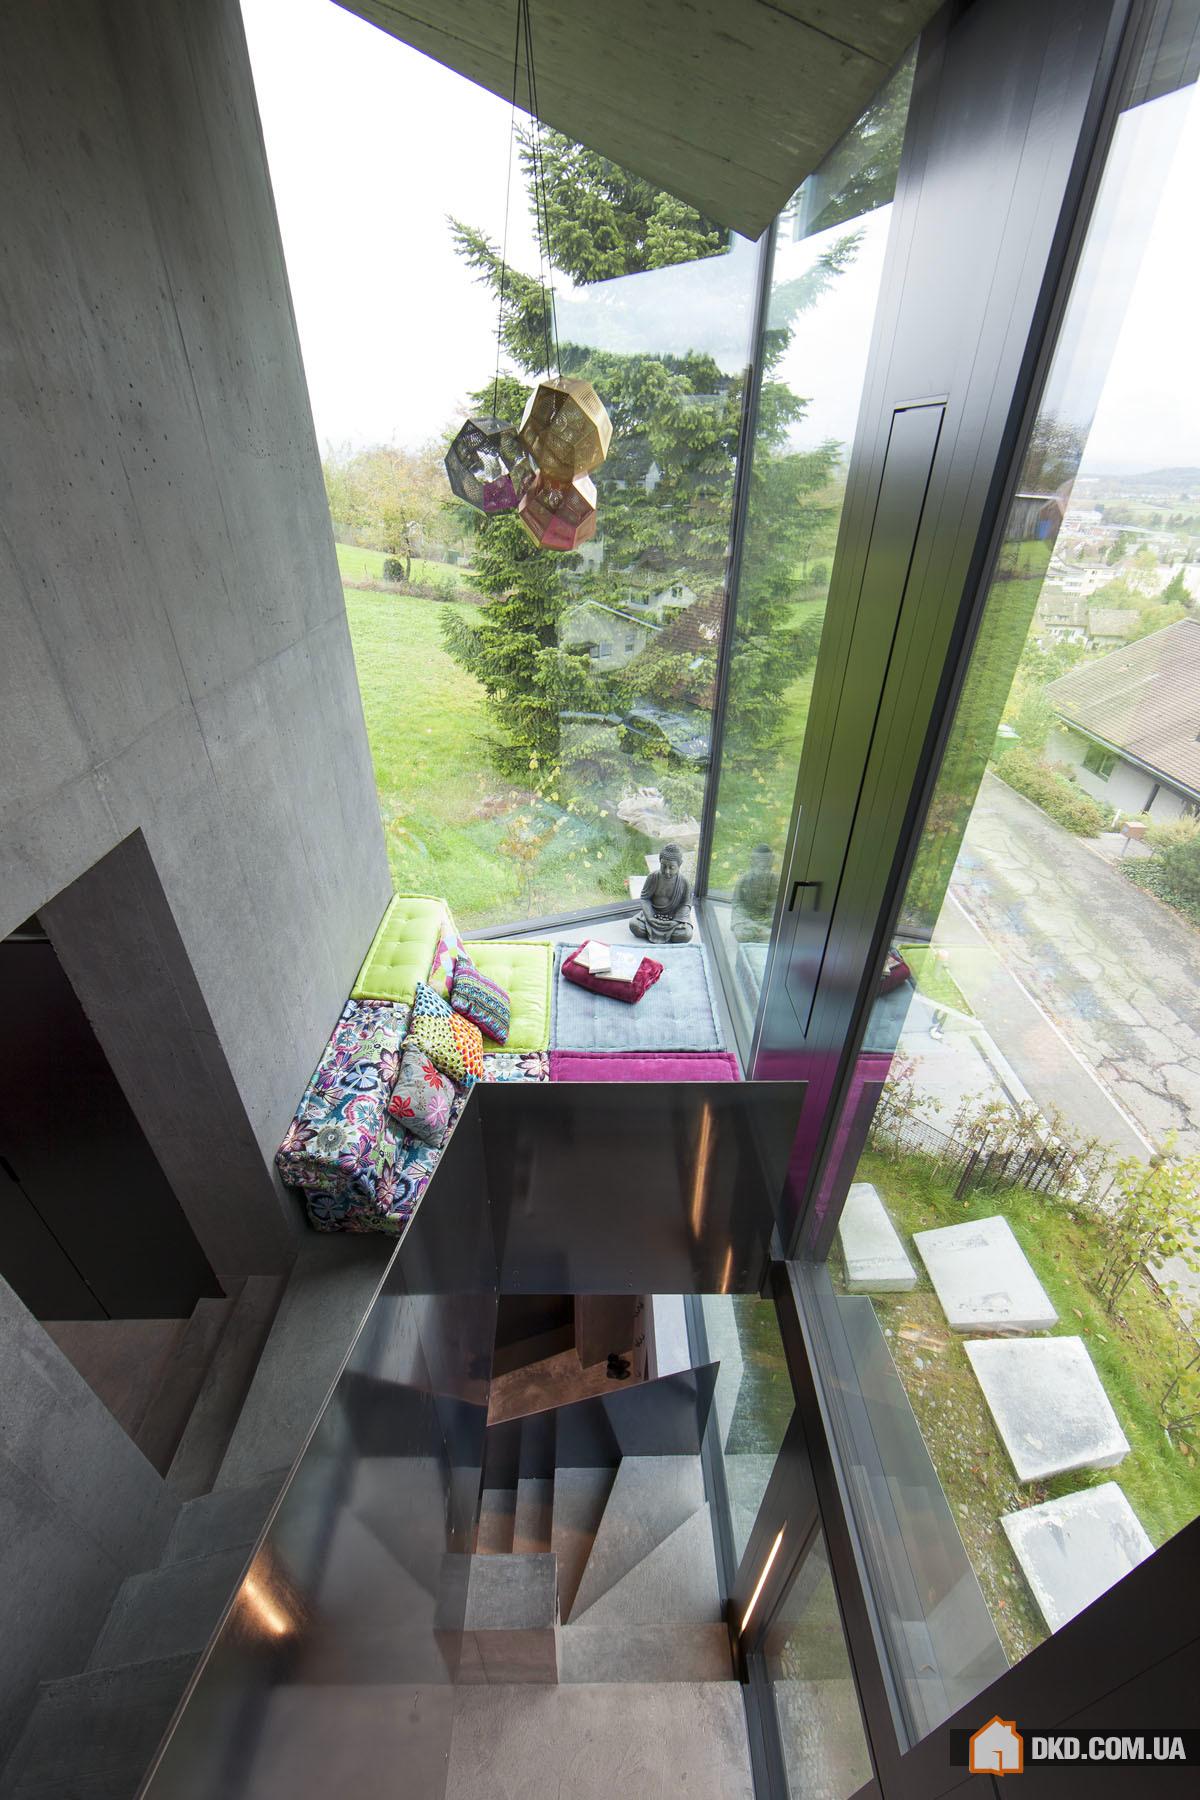 Дом из бетона с видом на виноградники